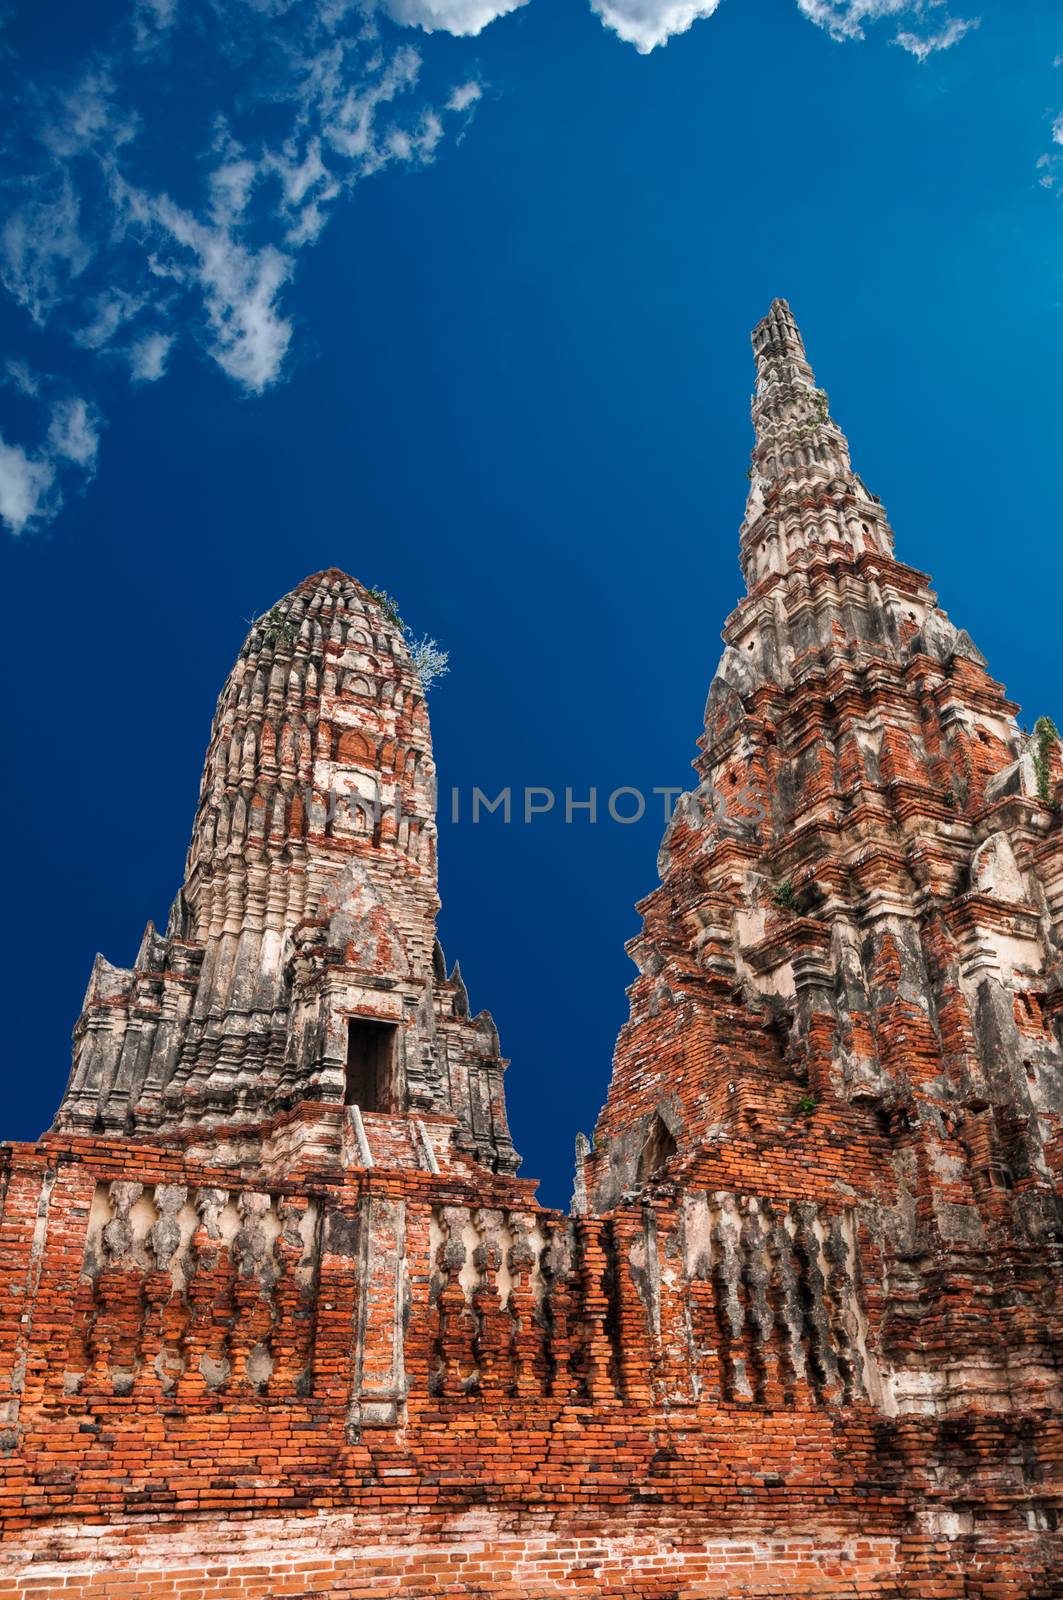 Old Temple Wat Chai watthanaram in Ayuttaya Thailand by weltreisendertj